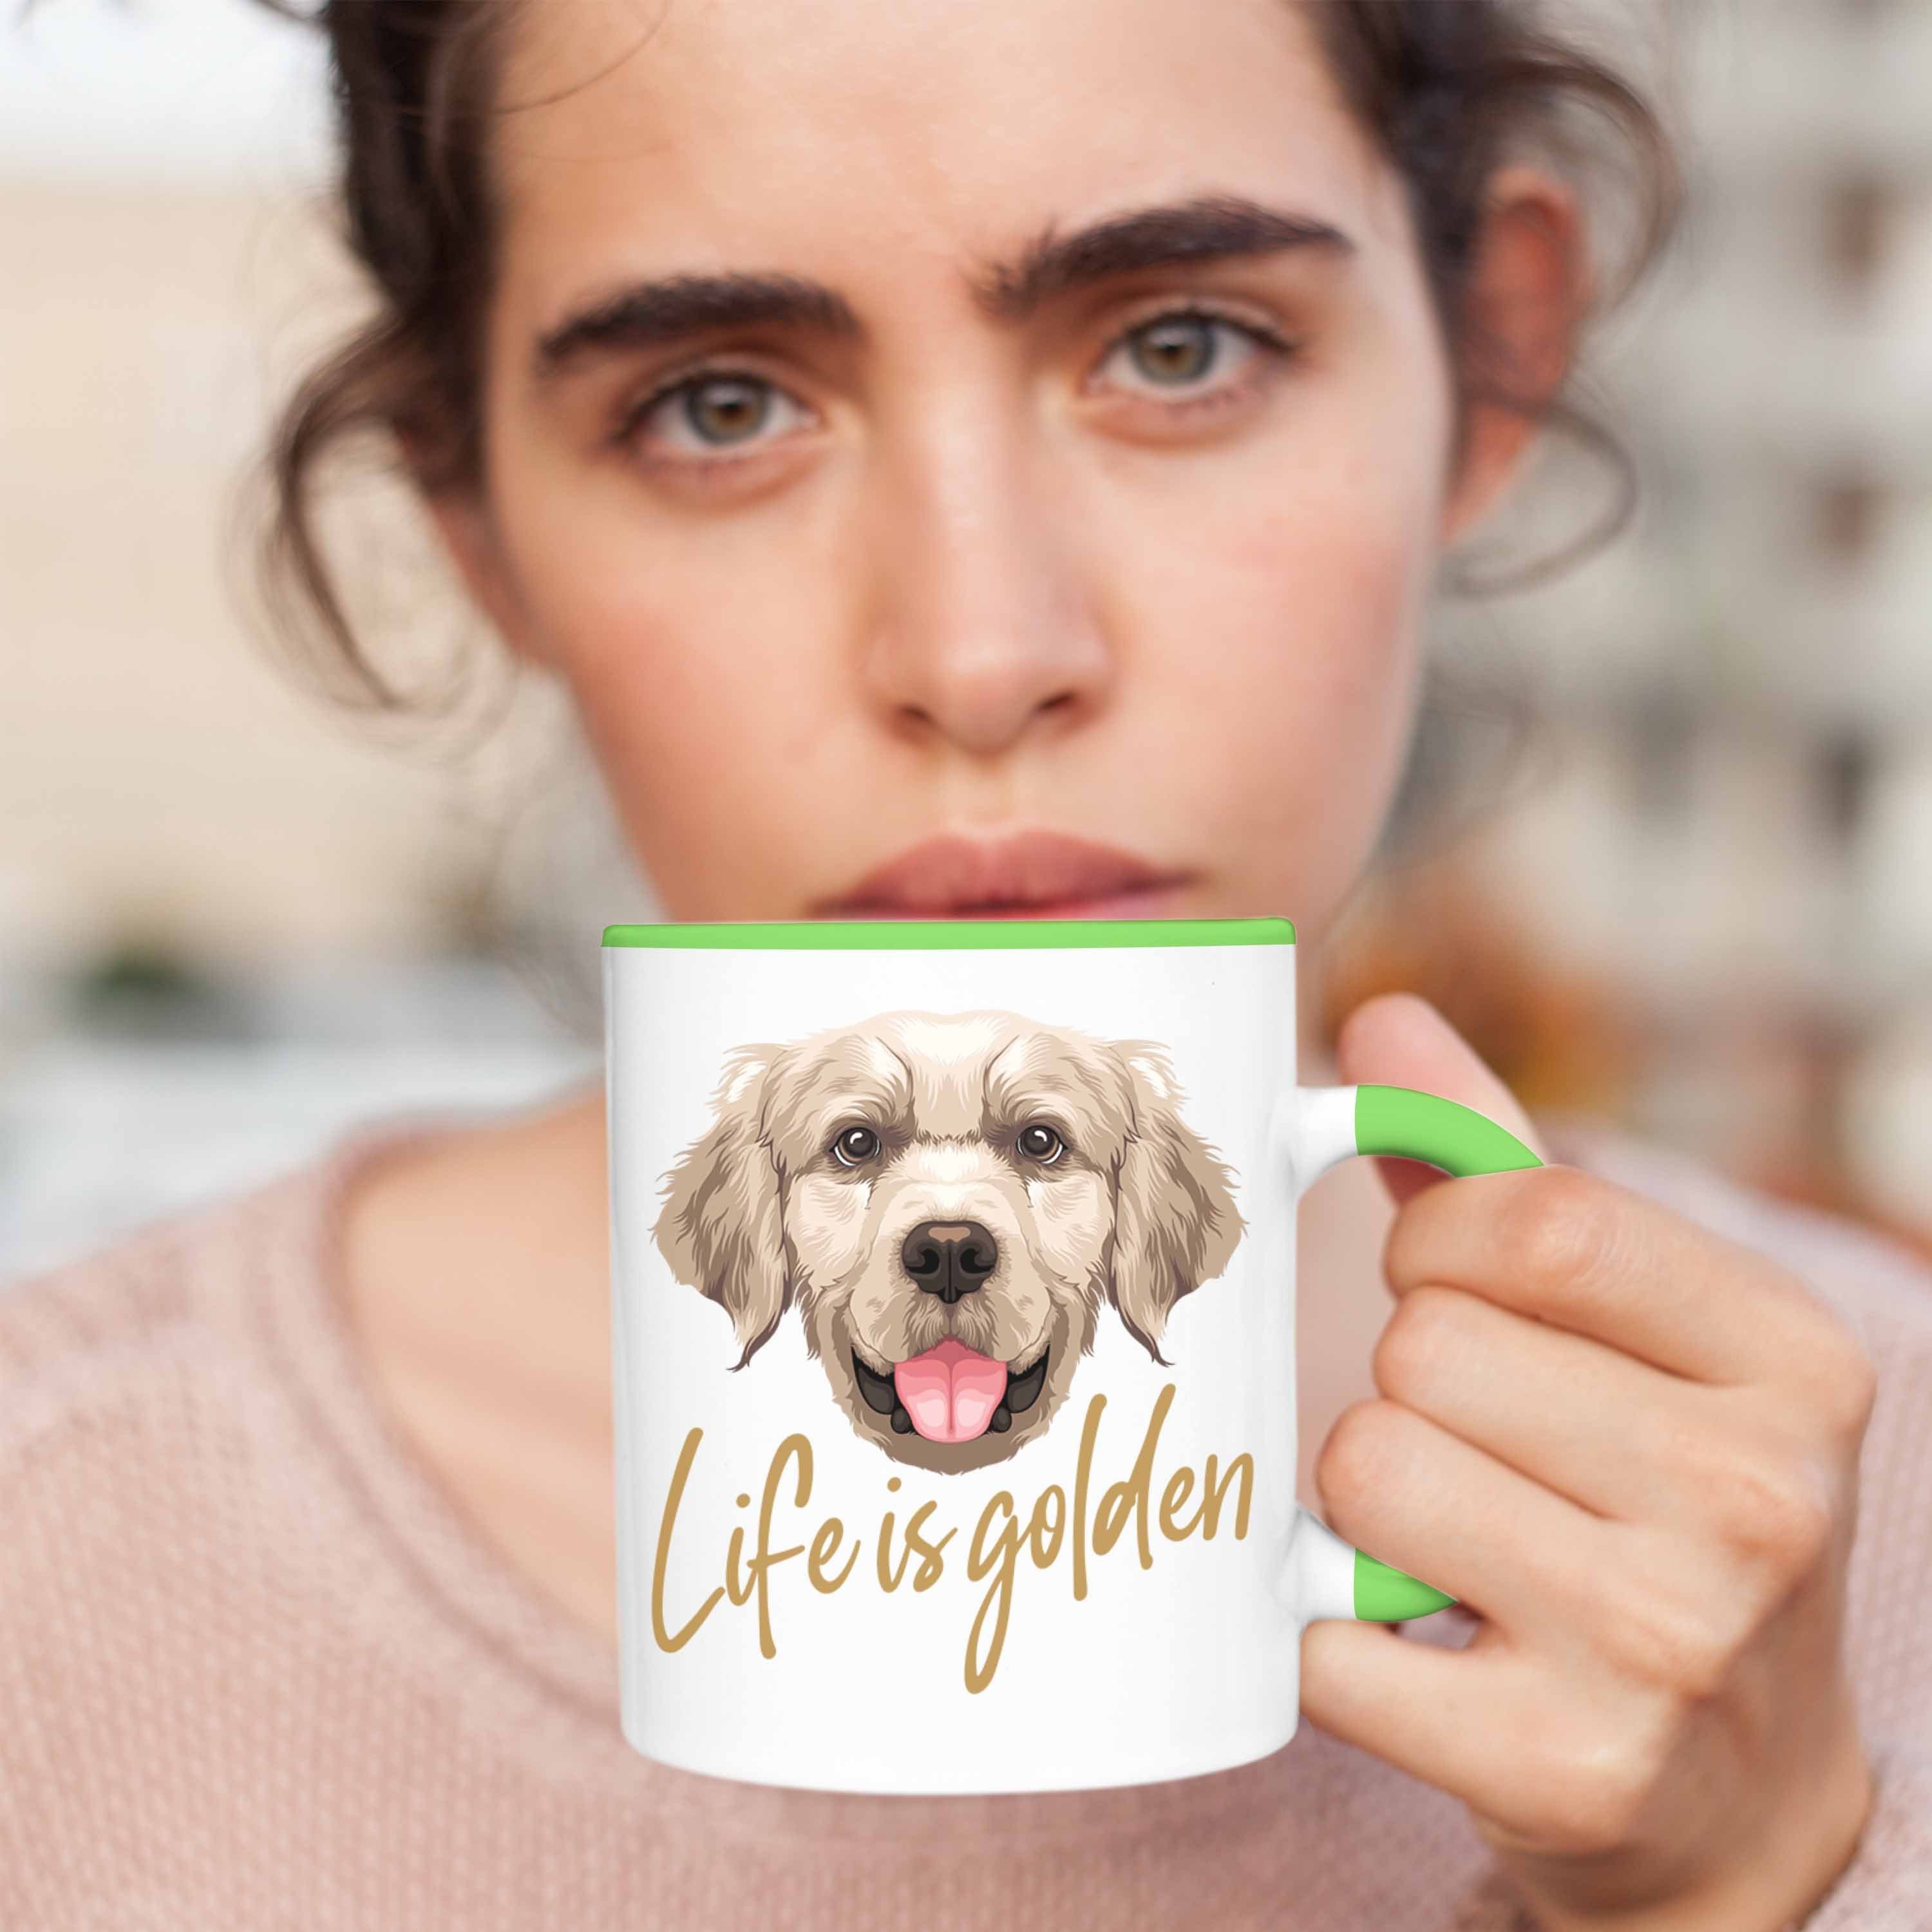 Life Besitzer Tasse Golden Grün Trendation Geschenk Hundebesitzer Golden Retriever Tasse Is